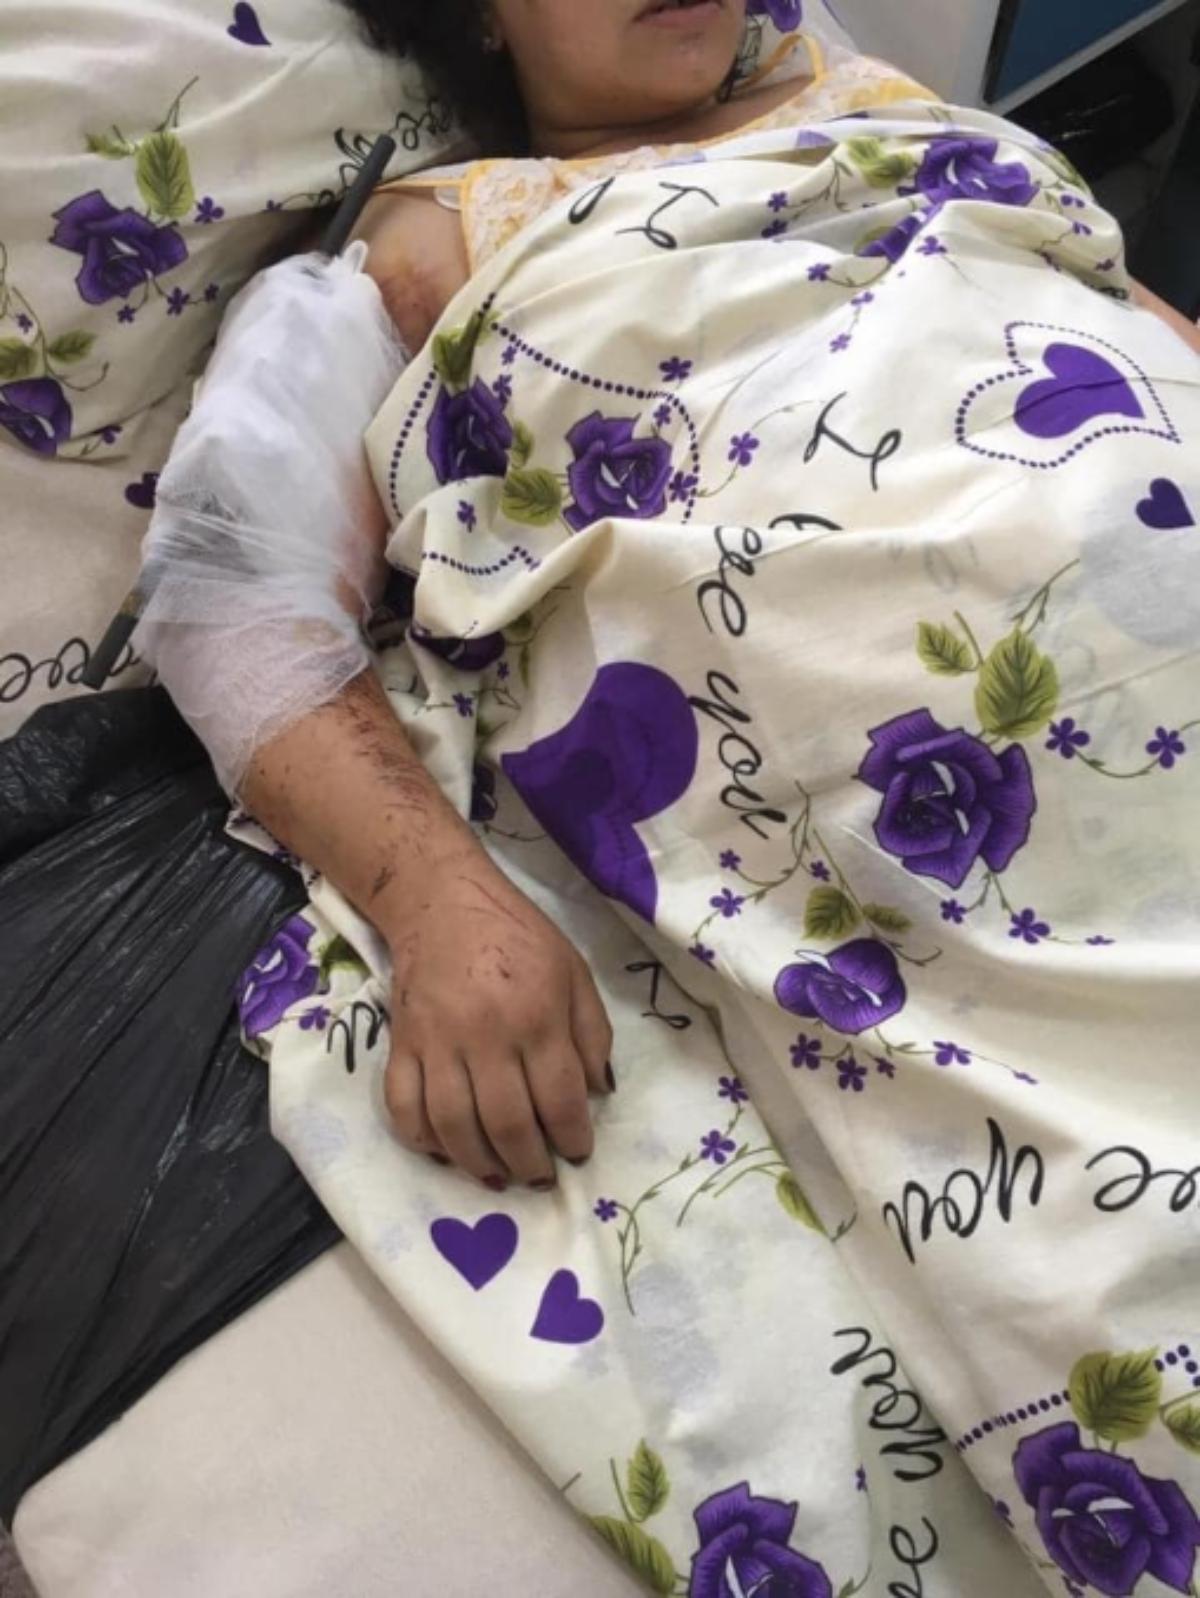 Արտակ Բեգլարյանն այցելել է ադրբեջանական ագրեսիայի հետևանքով վիրավորված քաղաքացիական անձանց